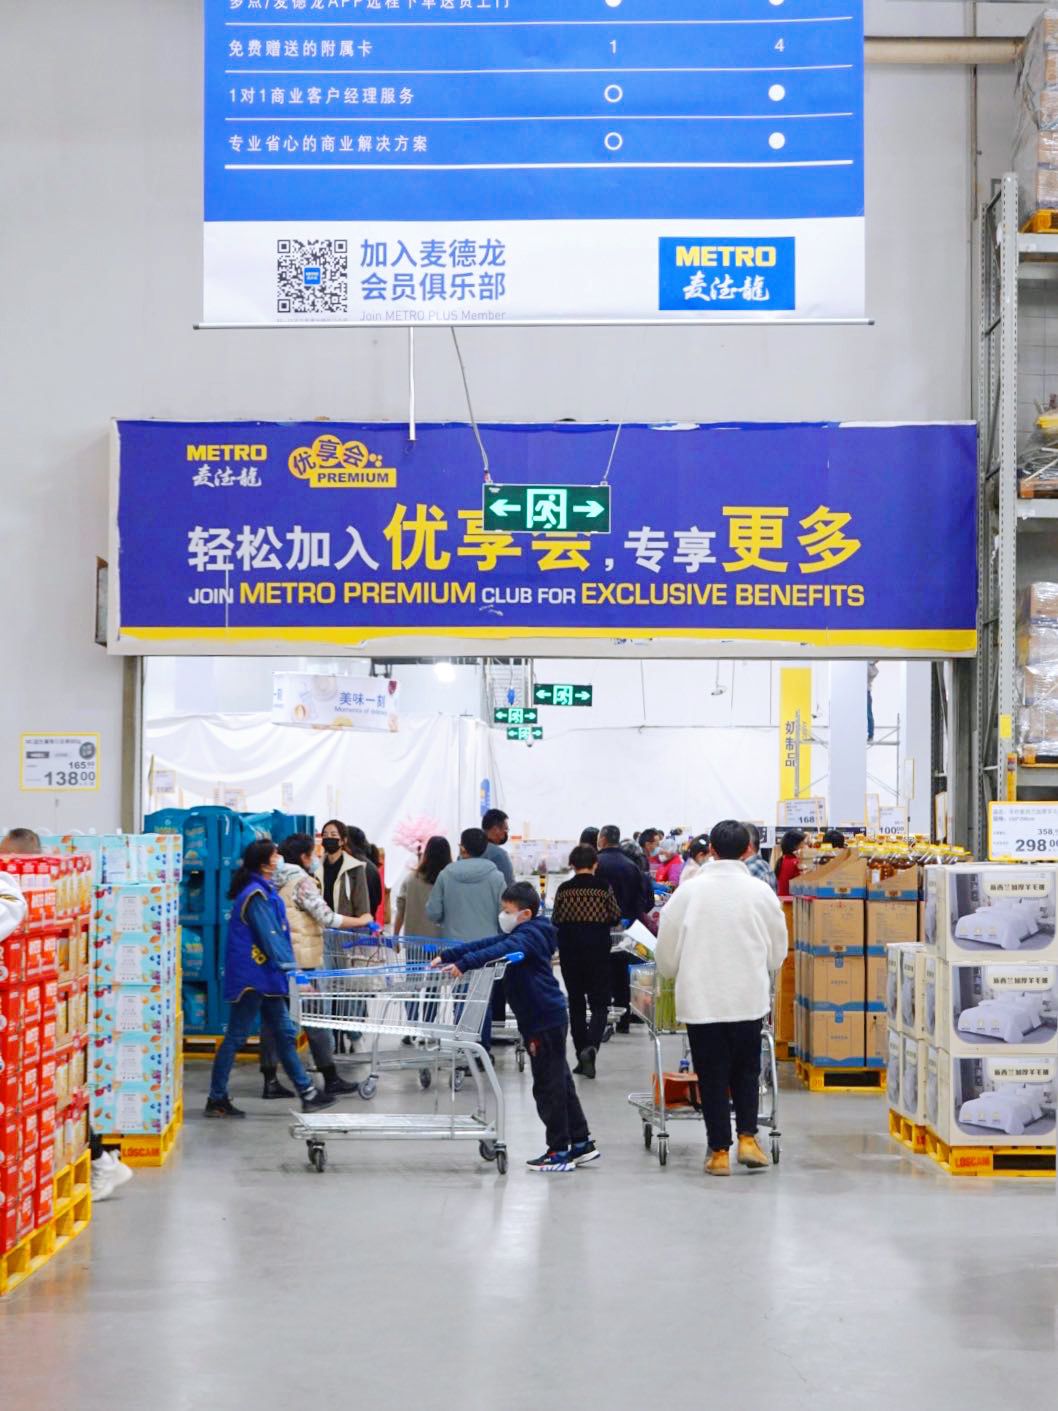 麦德龙中国否认将退出中国市场 预计今年开出4家会员店 | 每日经济网